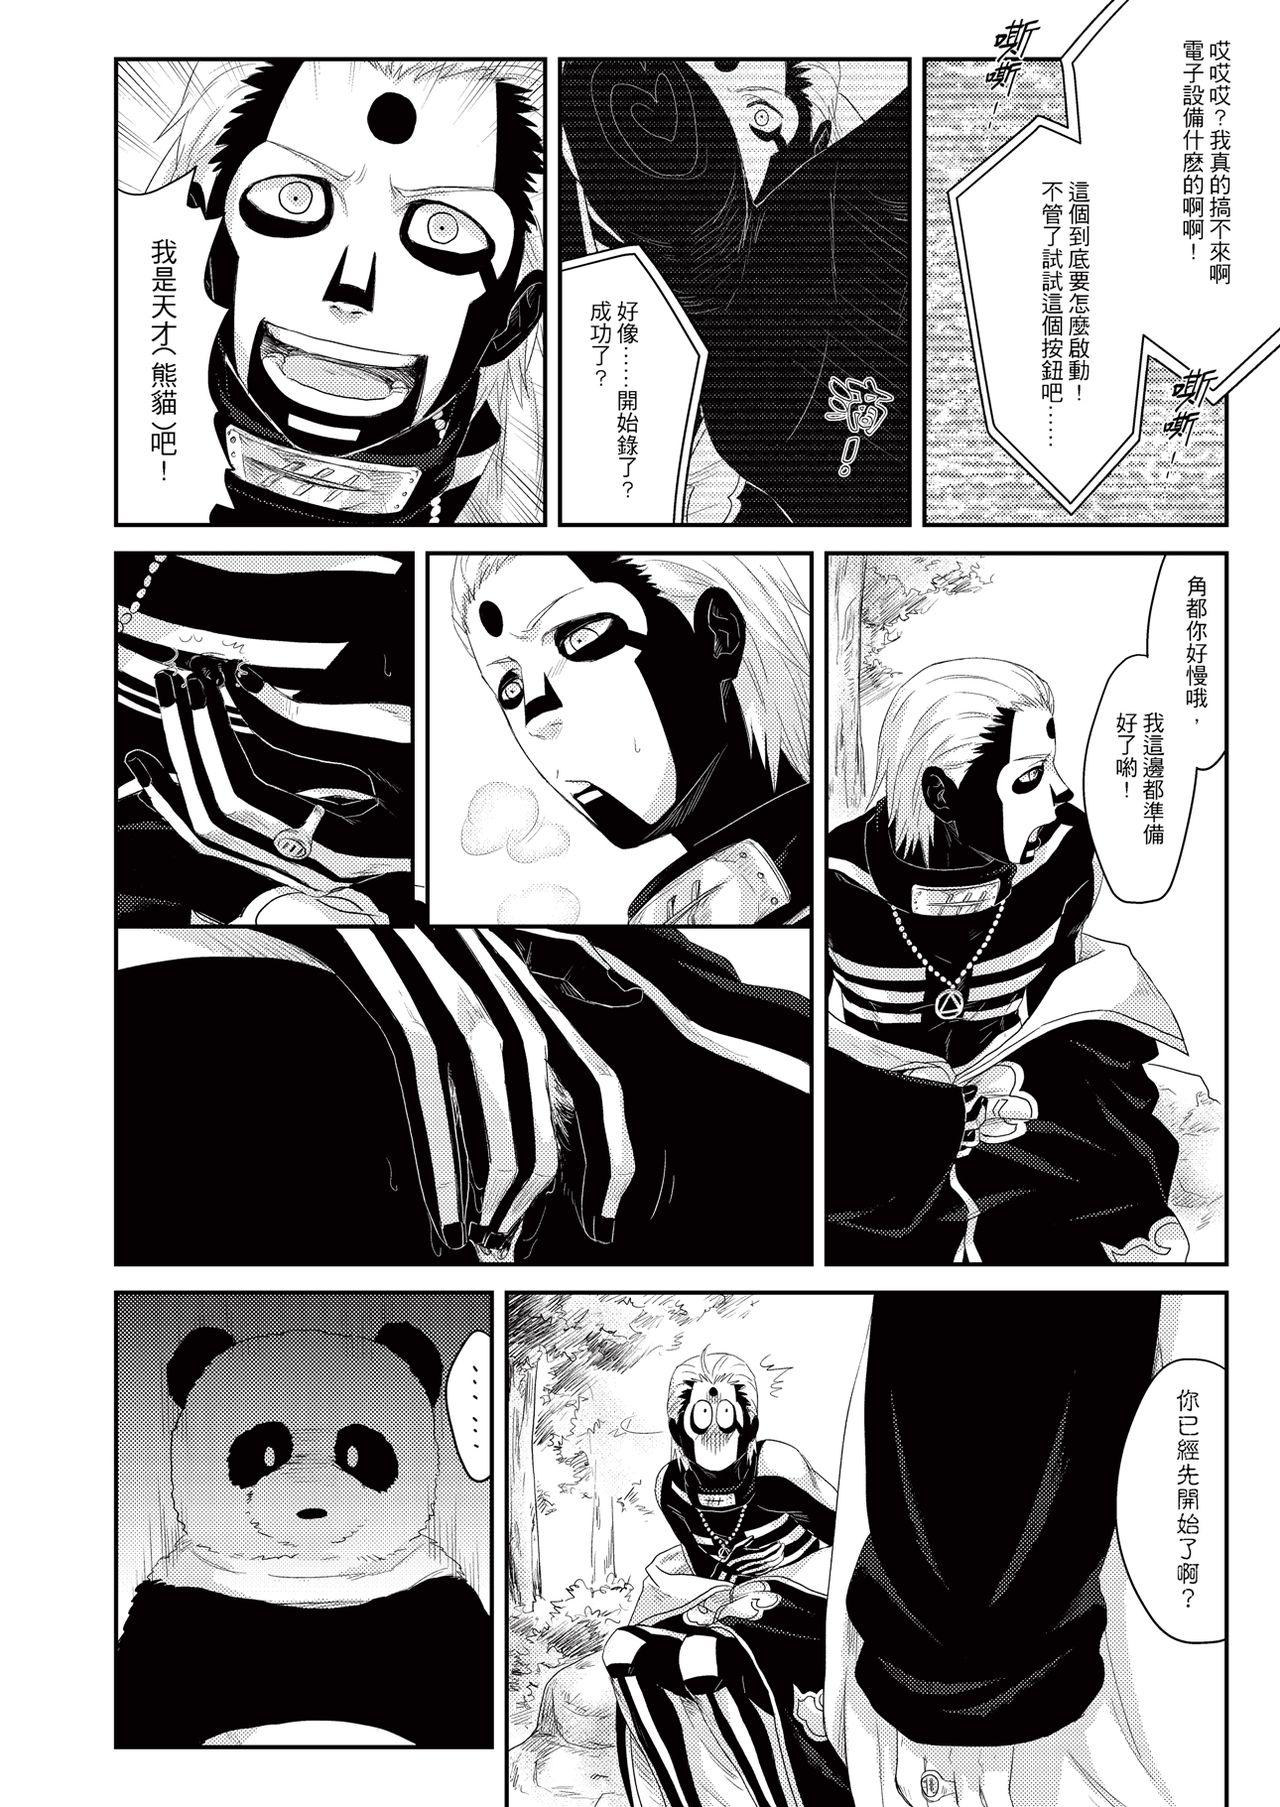 Panda Teaching 4